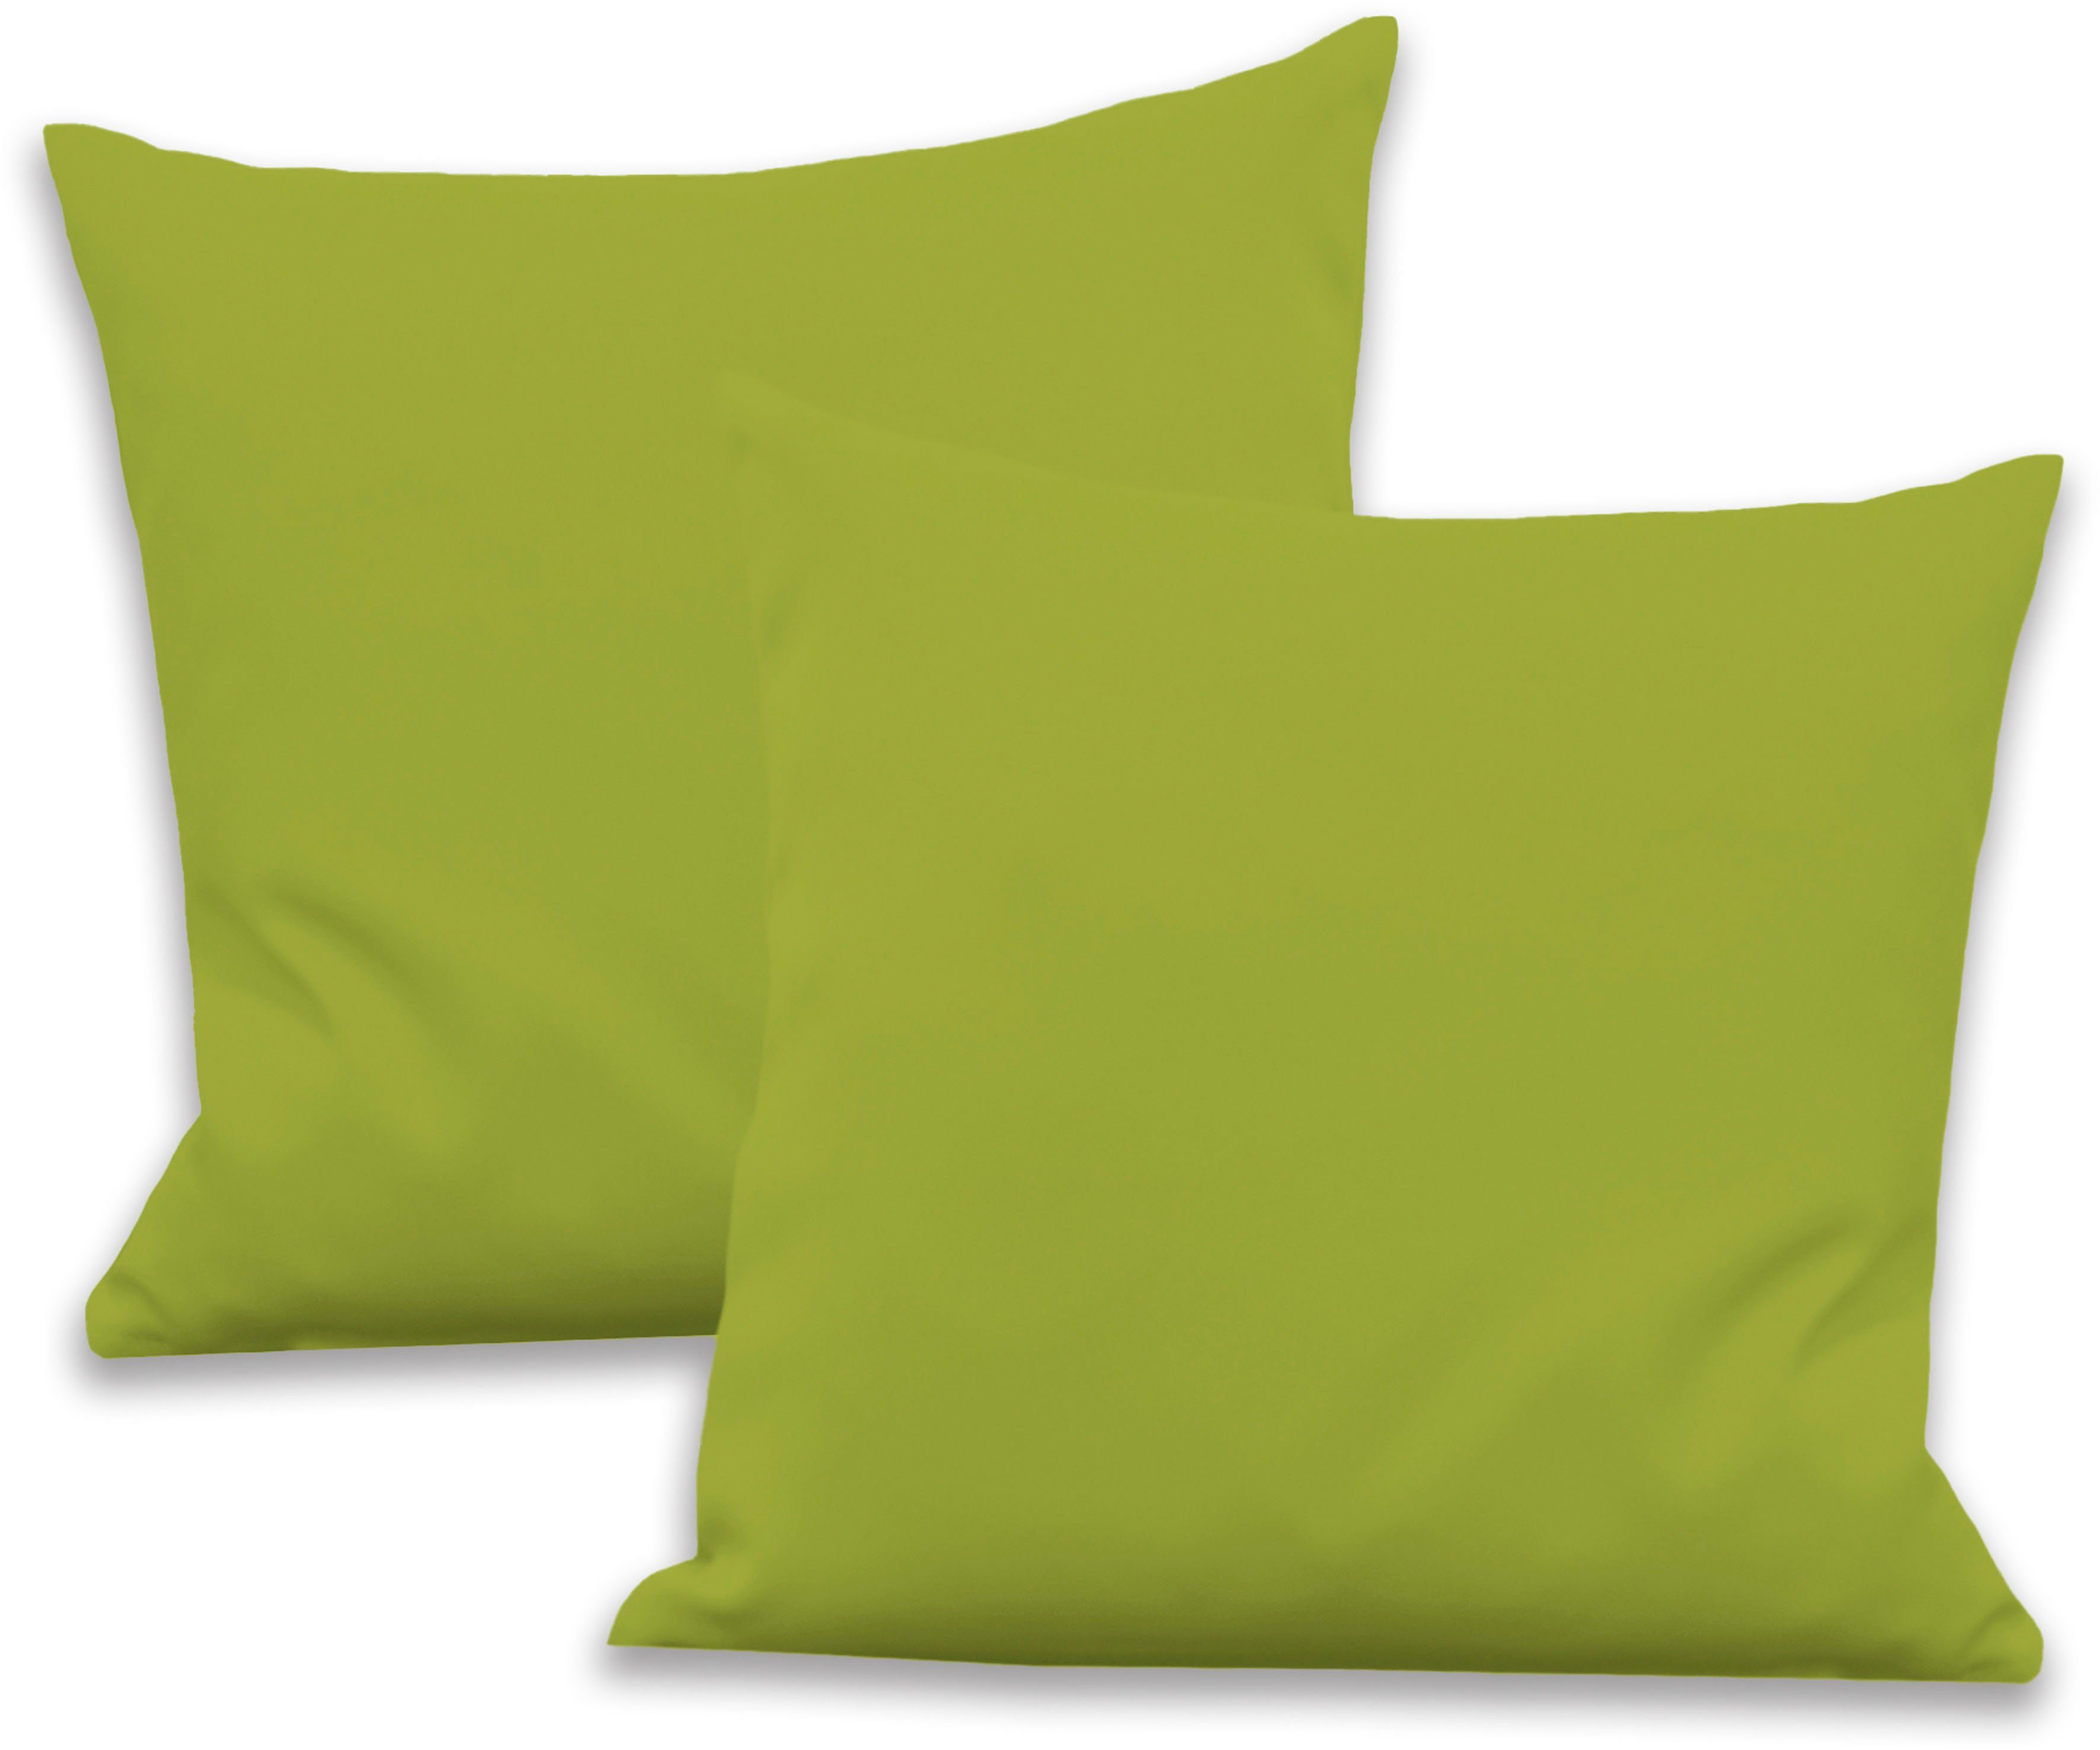 VHG Dekokissen Leon, Reißverschluss, Kissenhülle ohne Füllung, 2 Stück, unifarben grün | Dekokissen